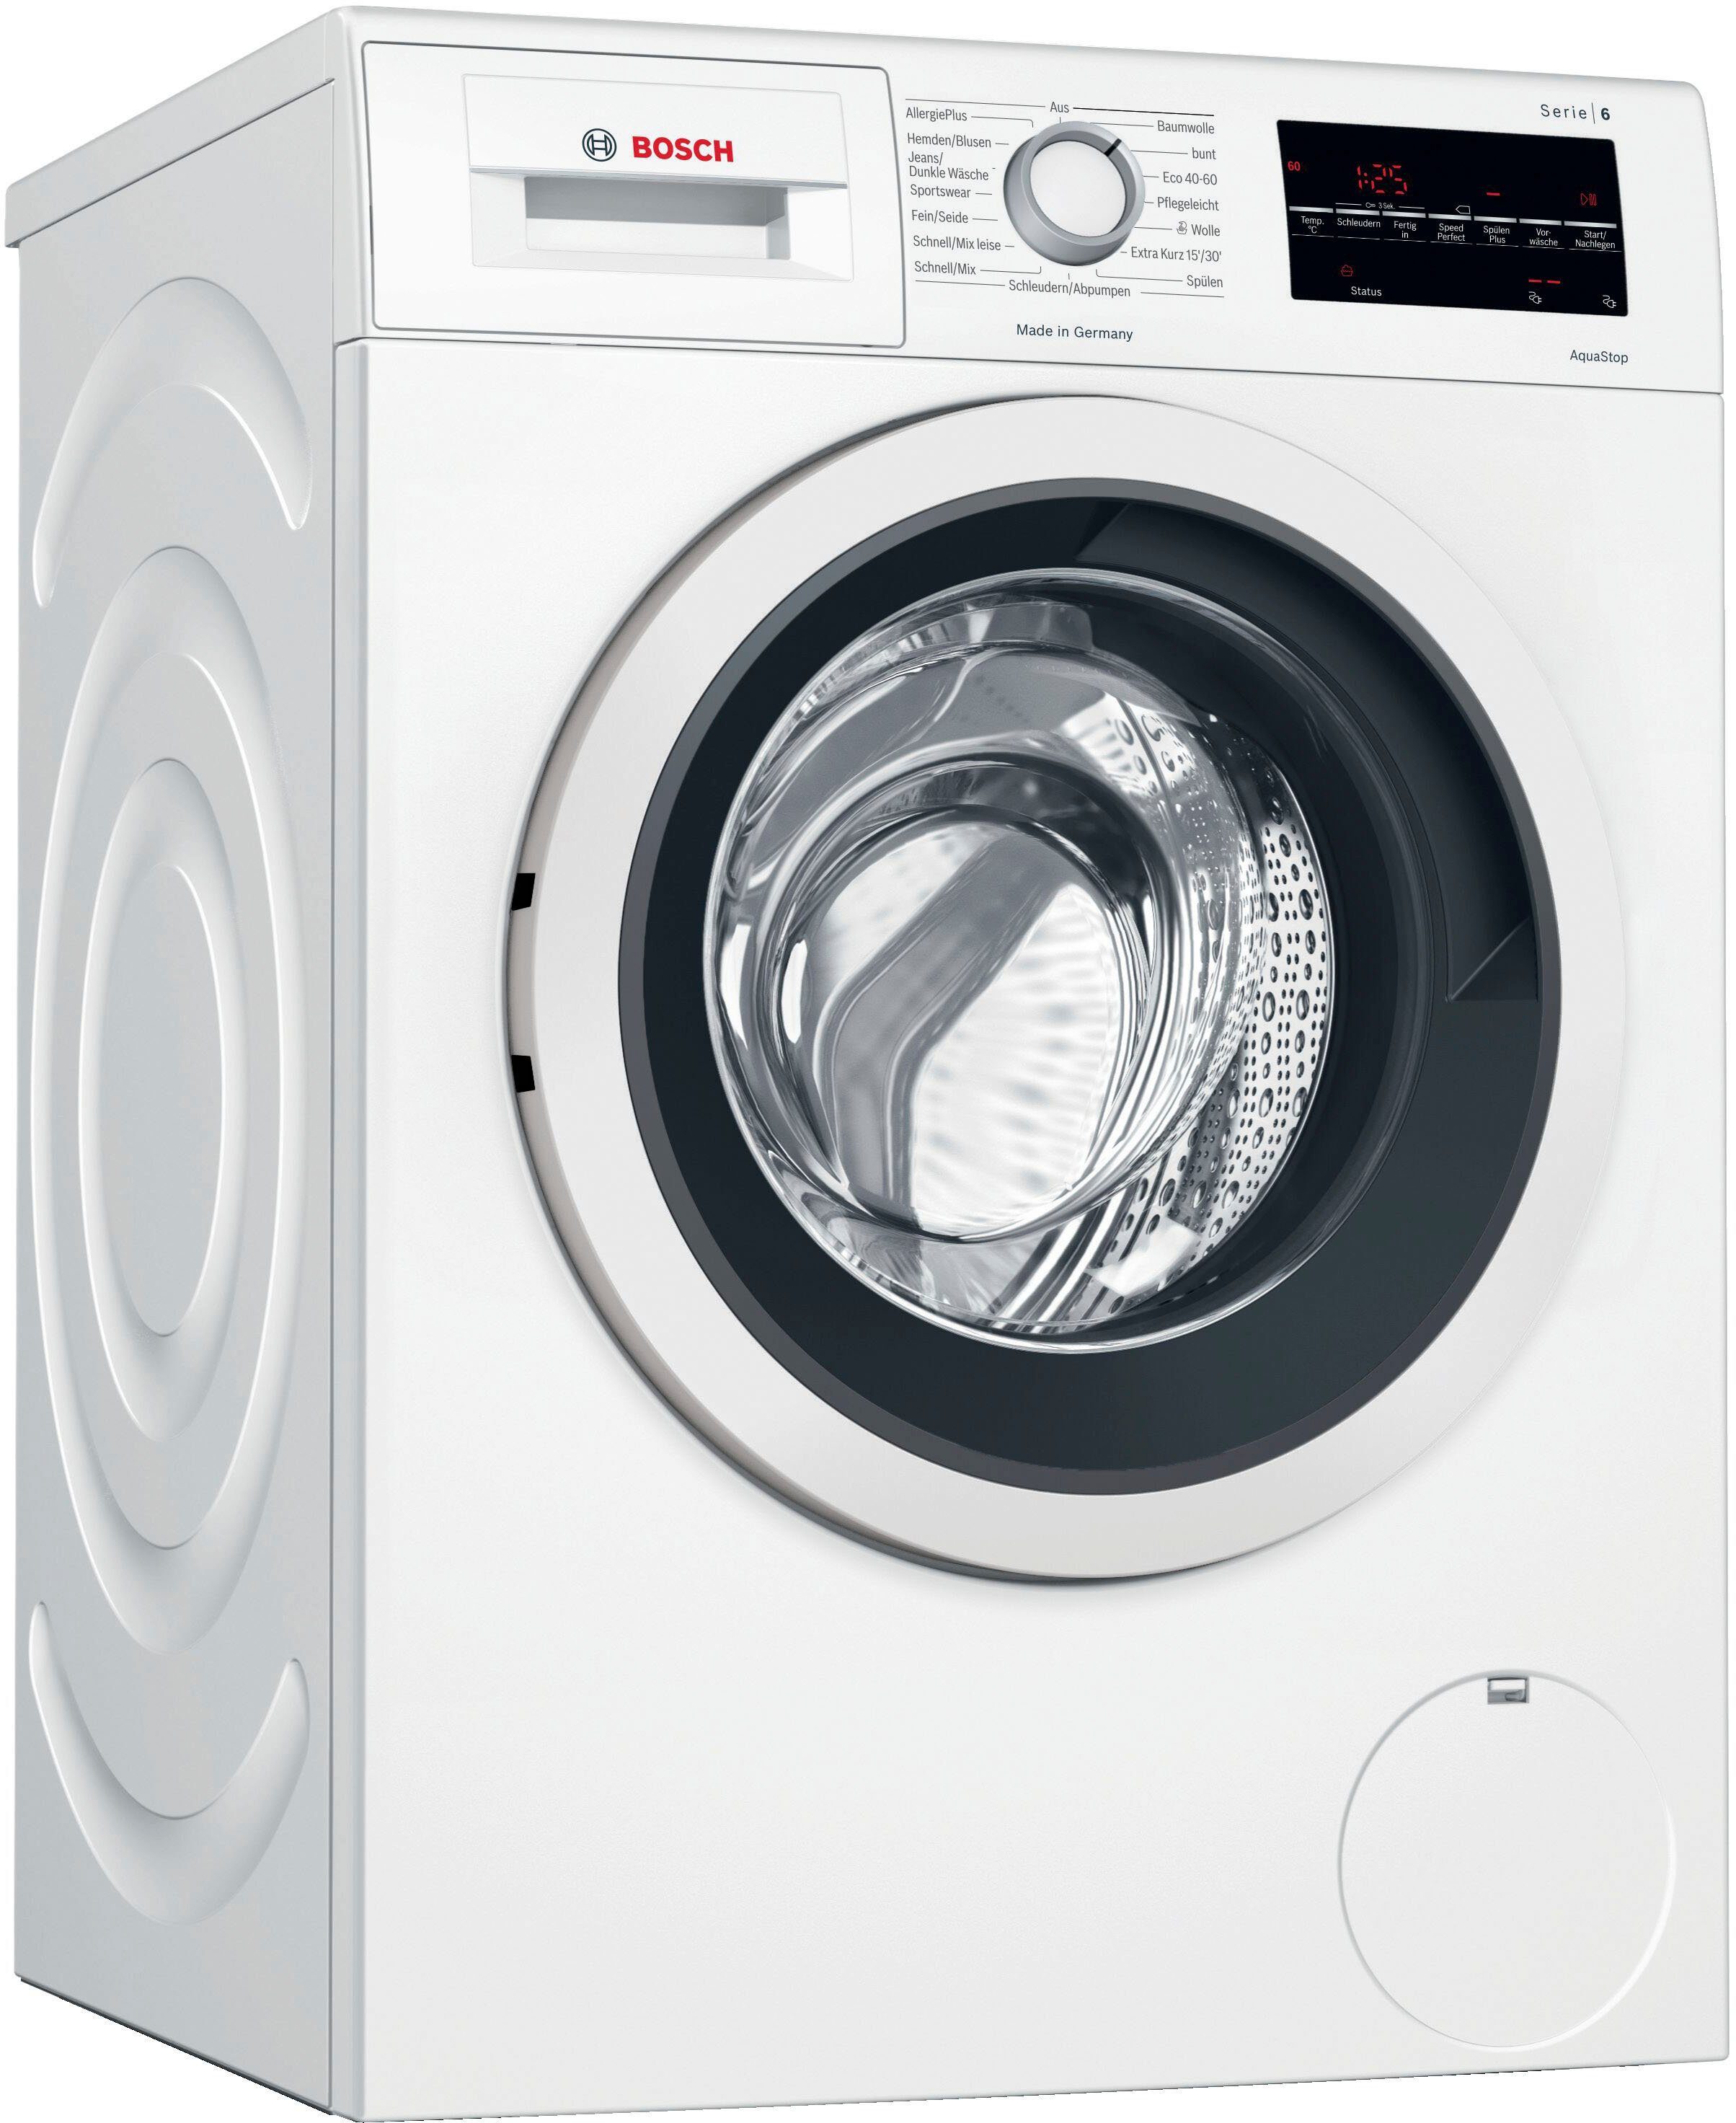 BOSCH Waschmaschine Serie 6 WAG28400, 8 1400 kg, U/min